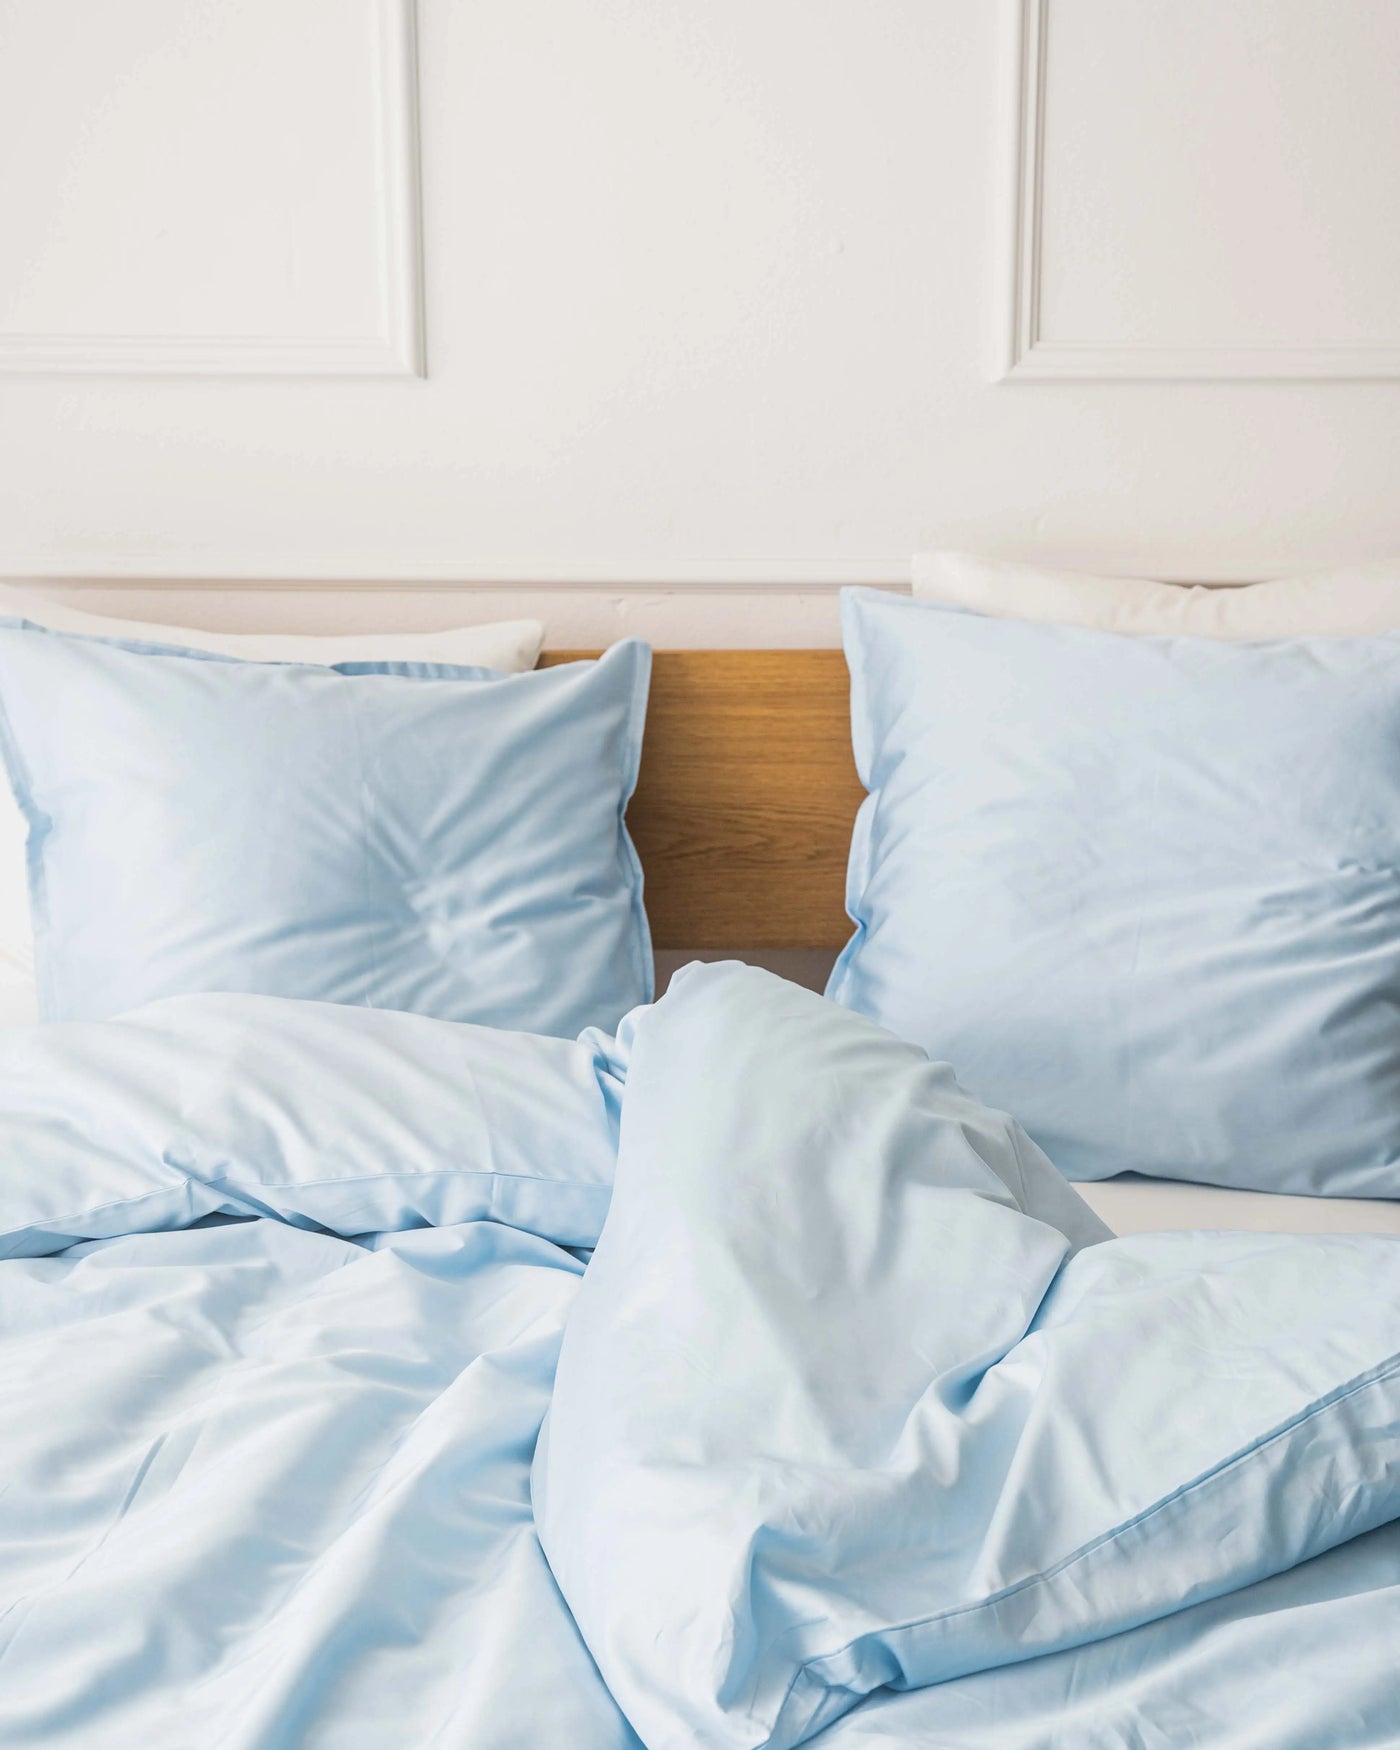 Miljøbillede af redt seng med egyptisk bomuld i farven lys blå